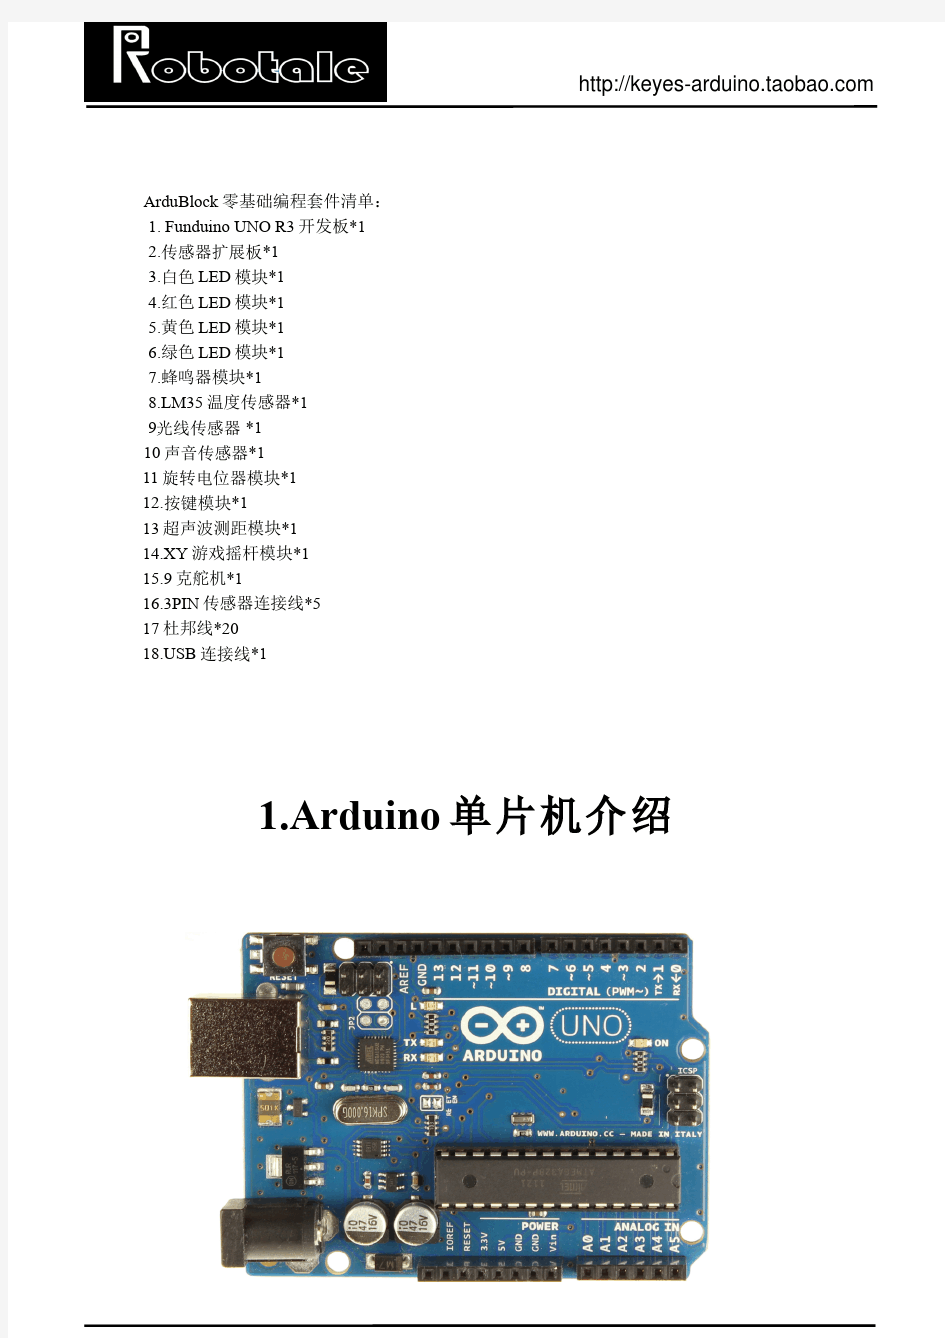 Arduino图形编程 ArduBlock零基础教程